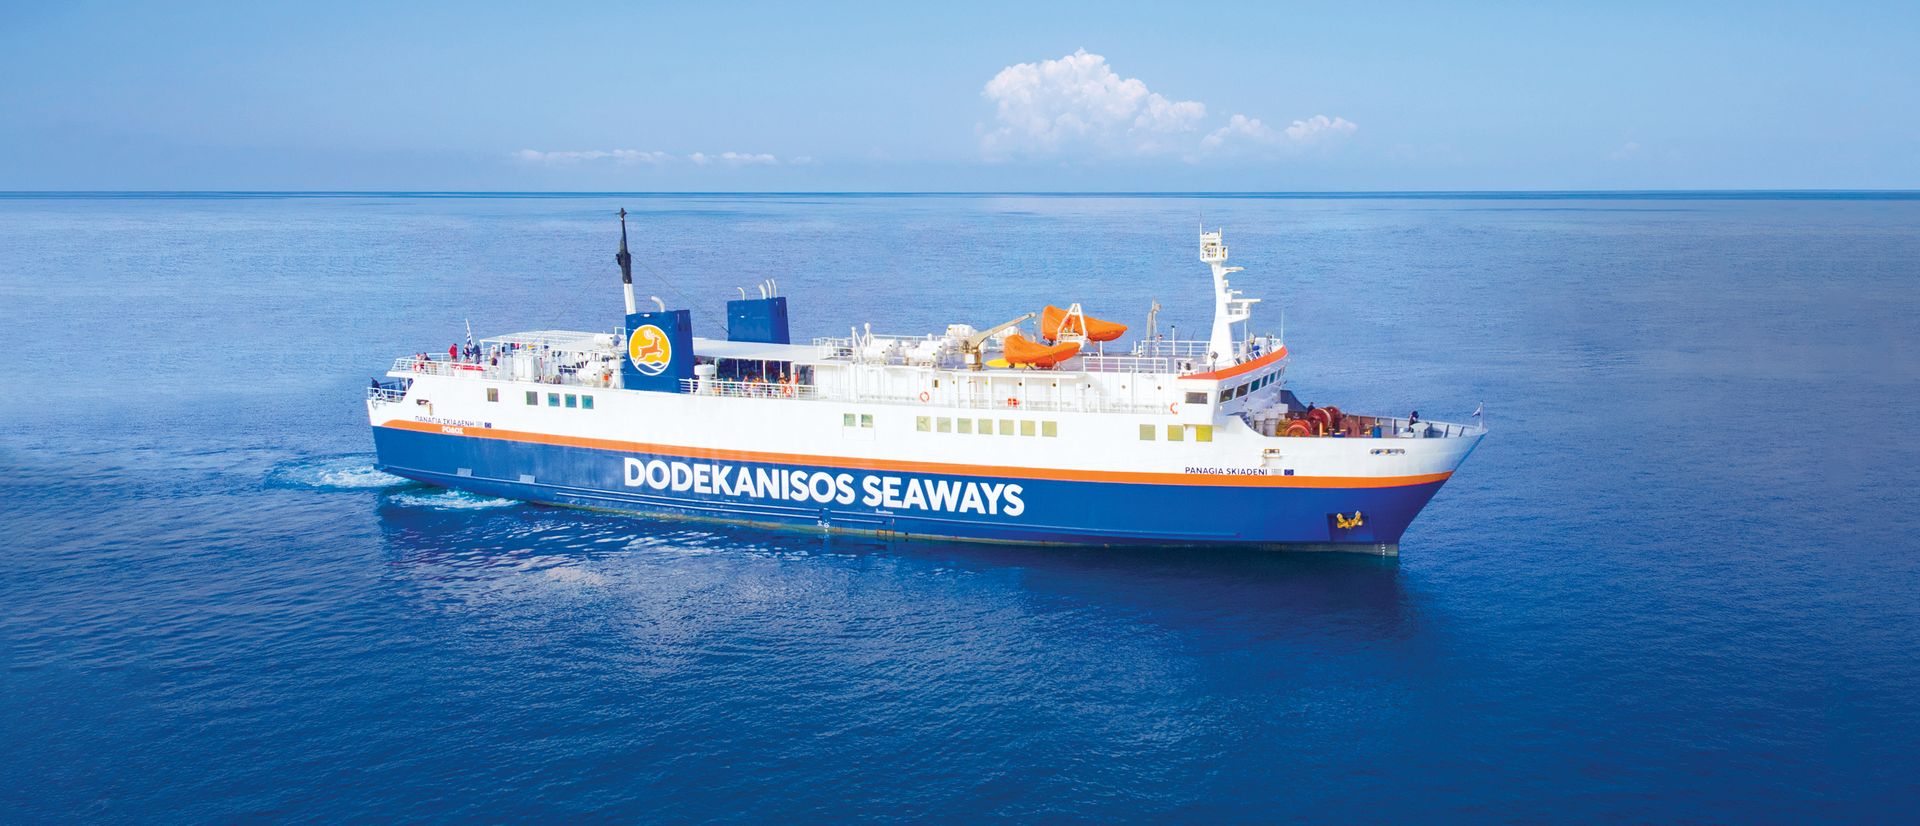 Dodekanisos Seaways: Θέσεις προσέγγισης στο λιμάνι της Σύμης